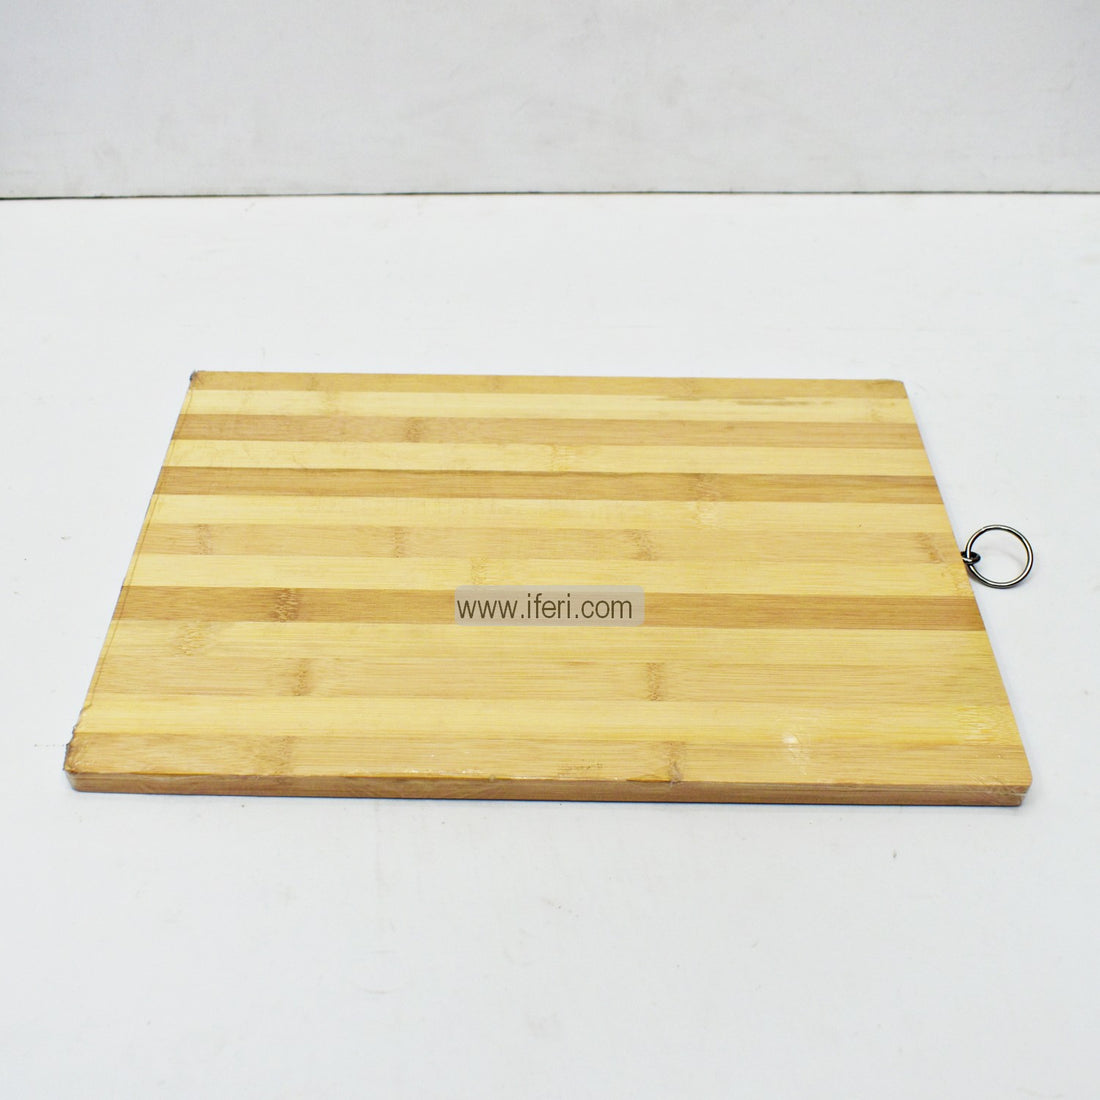 14 inch Bamboo Cutting Board/Chopping Board RY0799